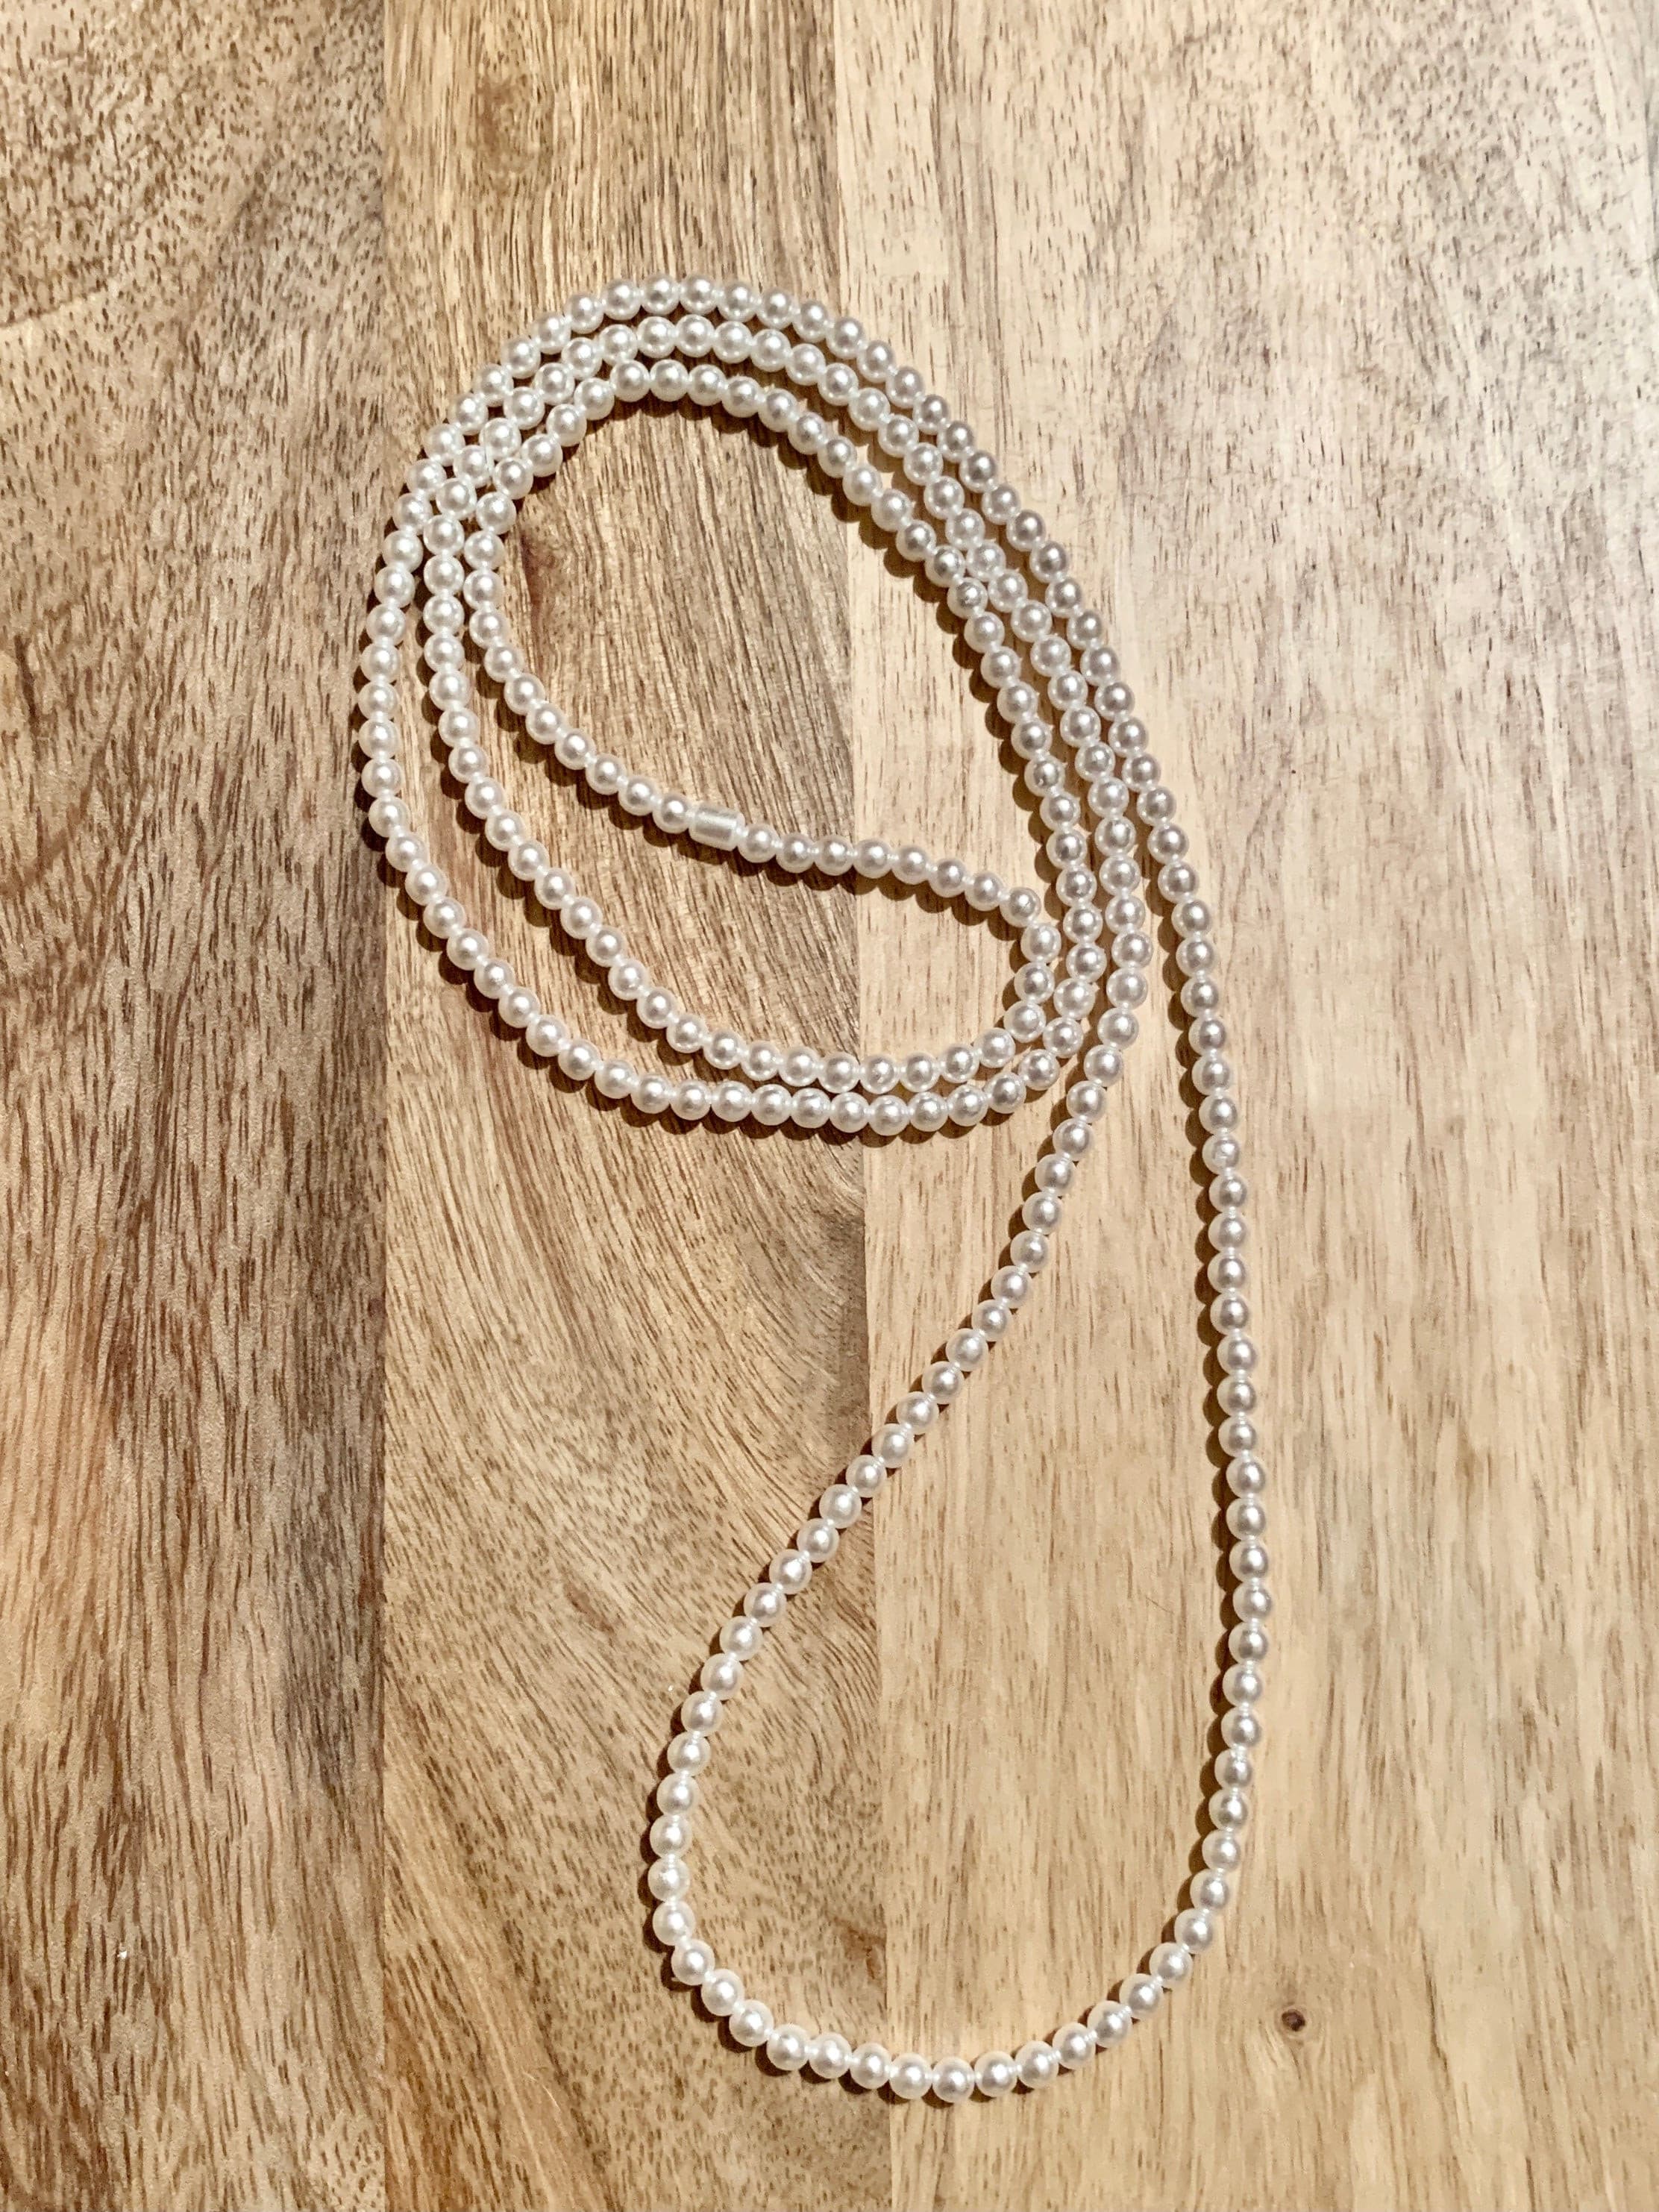 Mini Pearl Necklace.